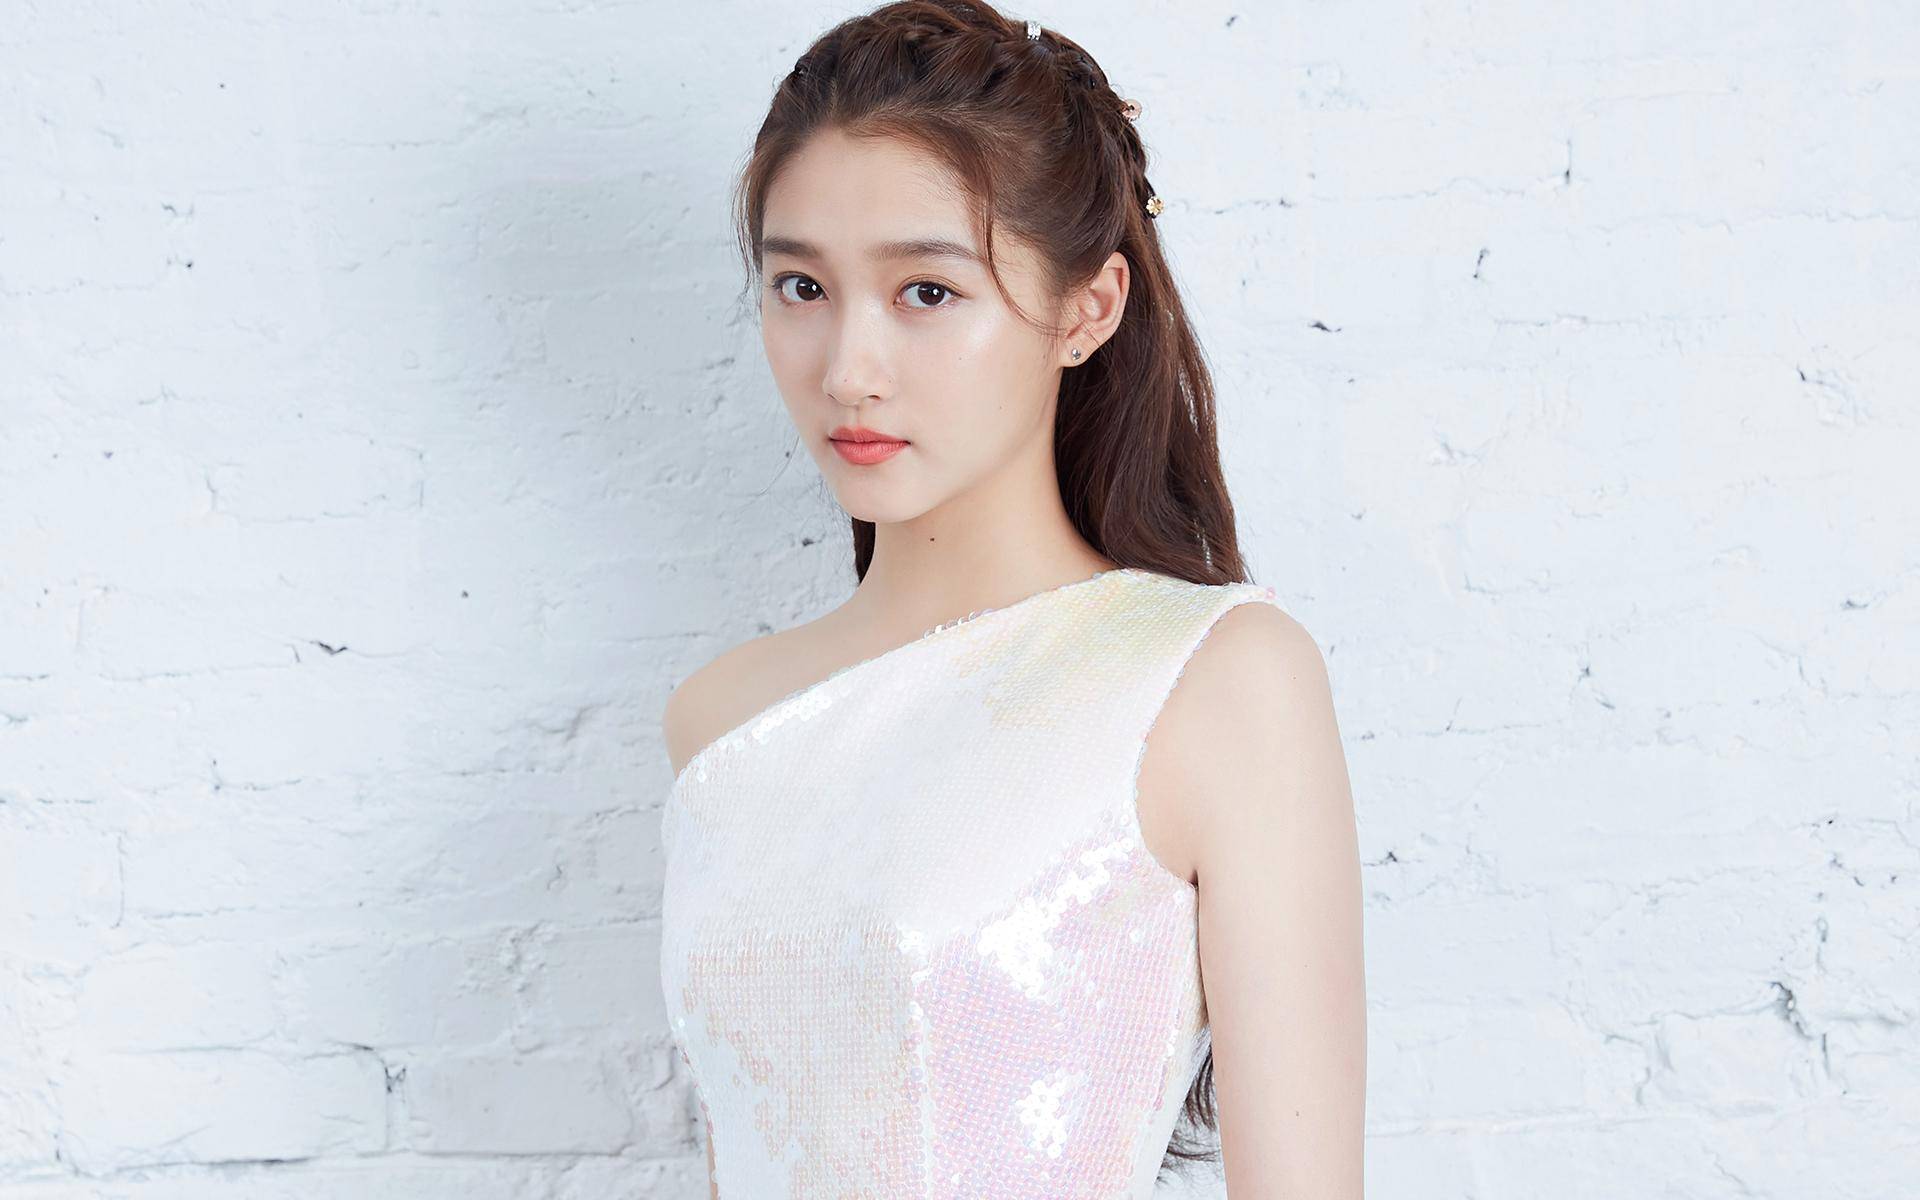 Cantik Mana, Aktris Dilraba dengan Ju Jingyi?-Image-4